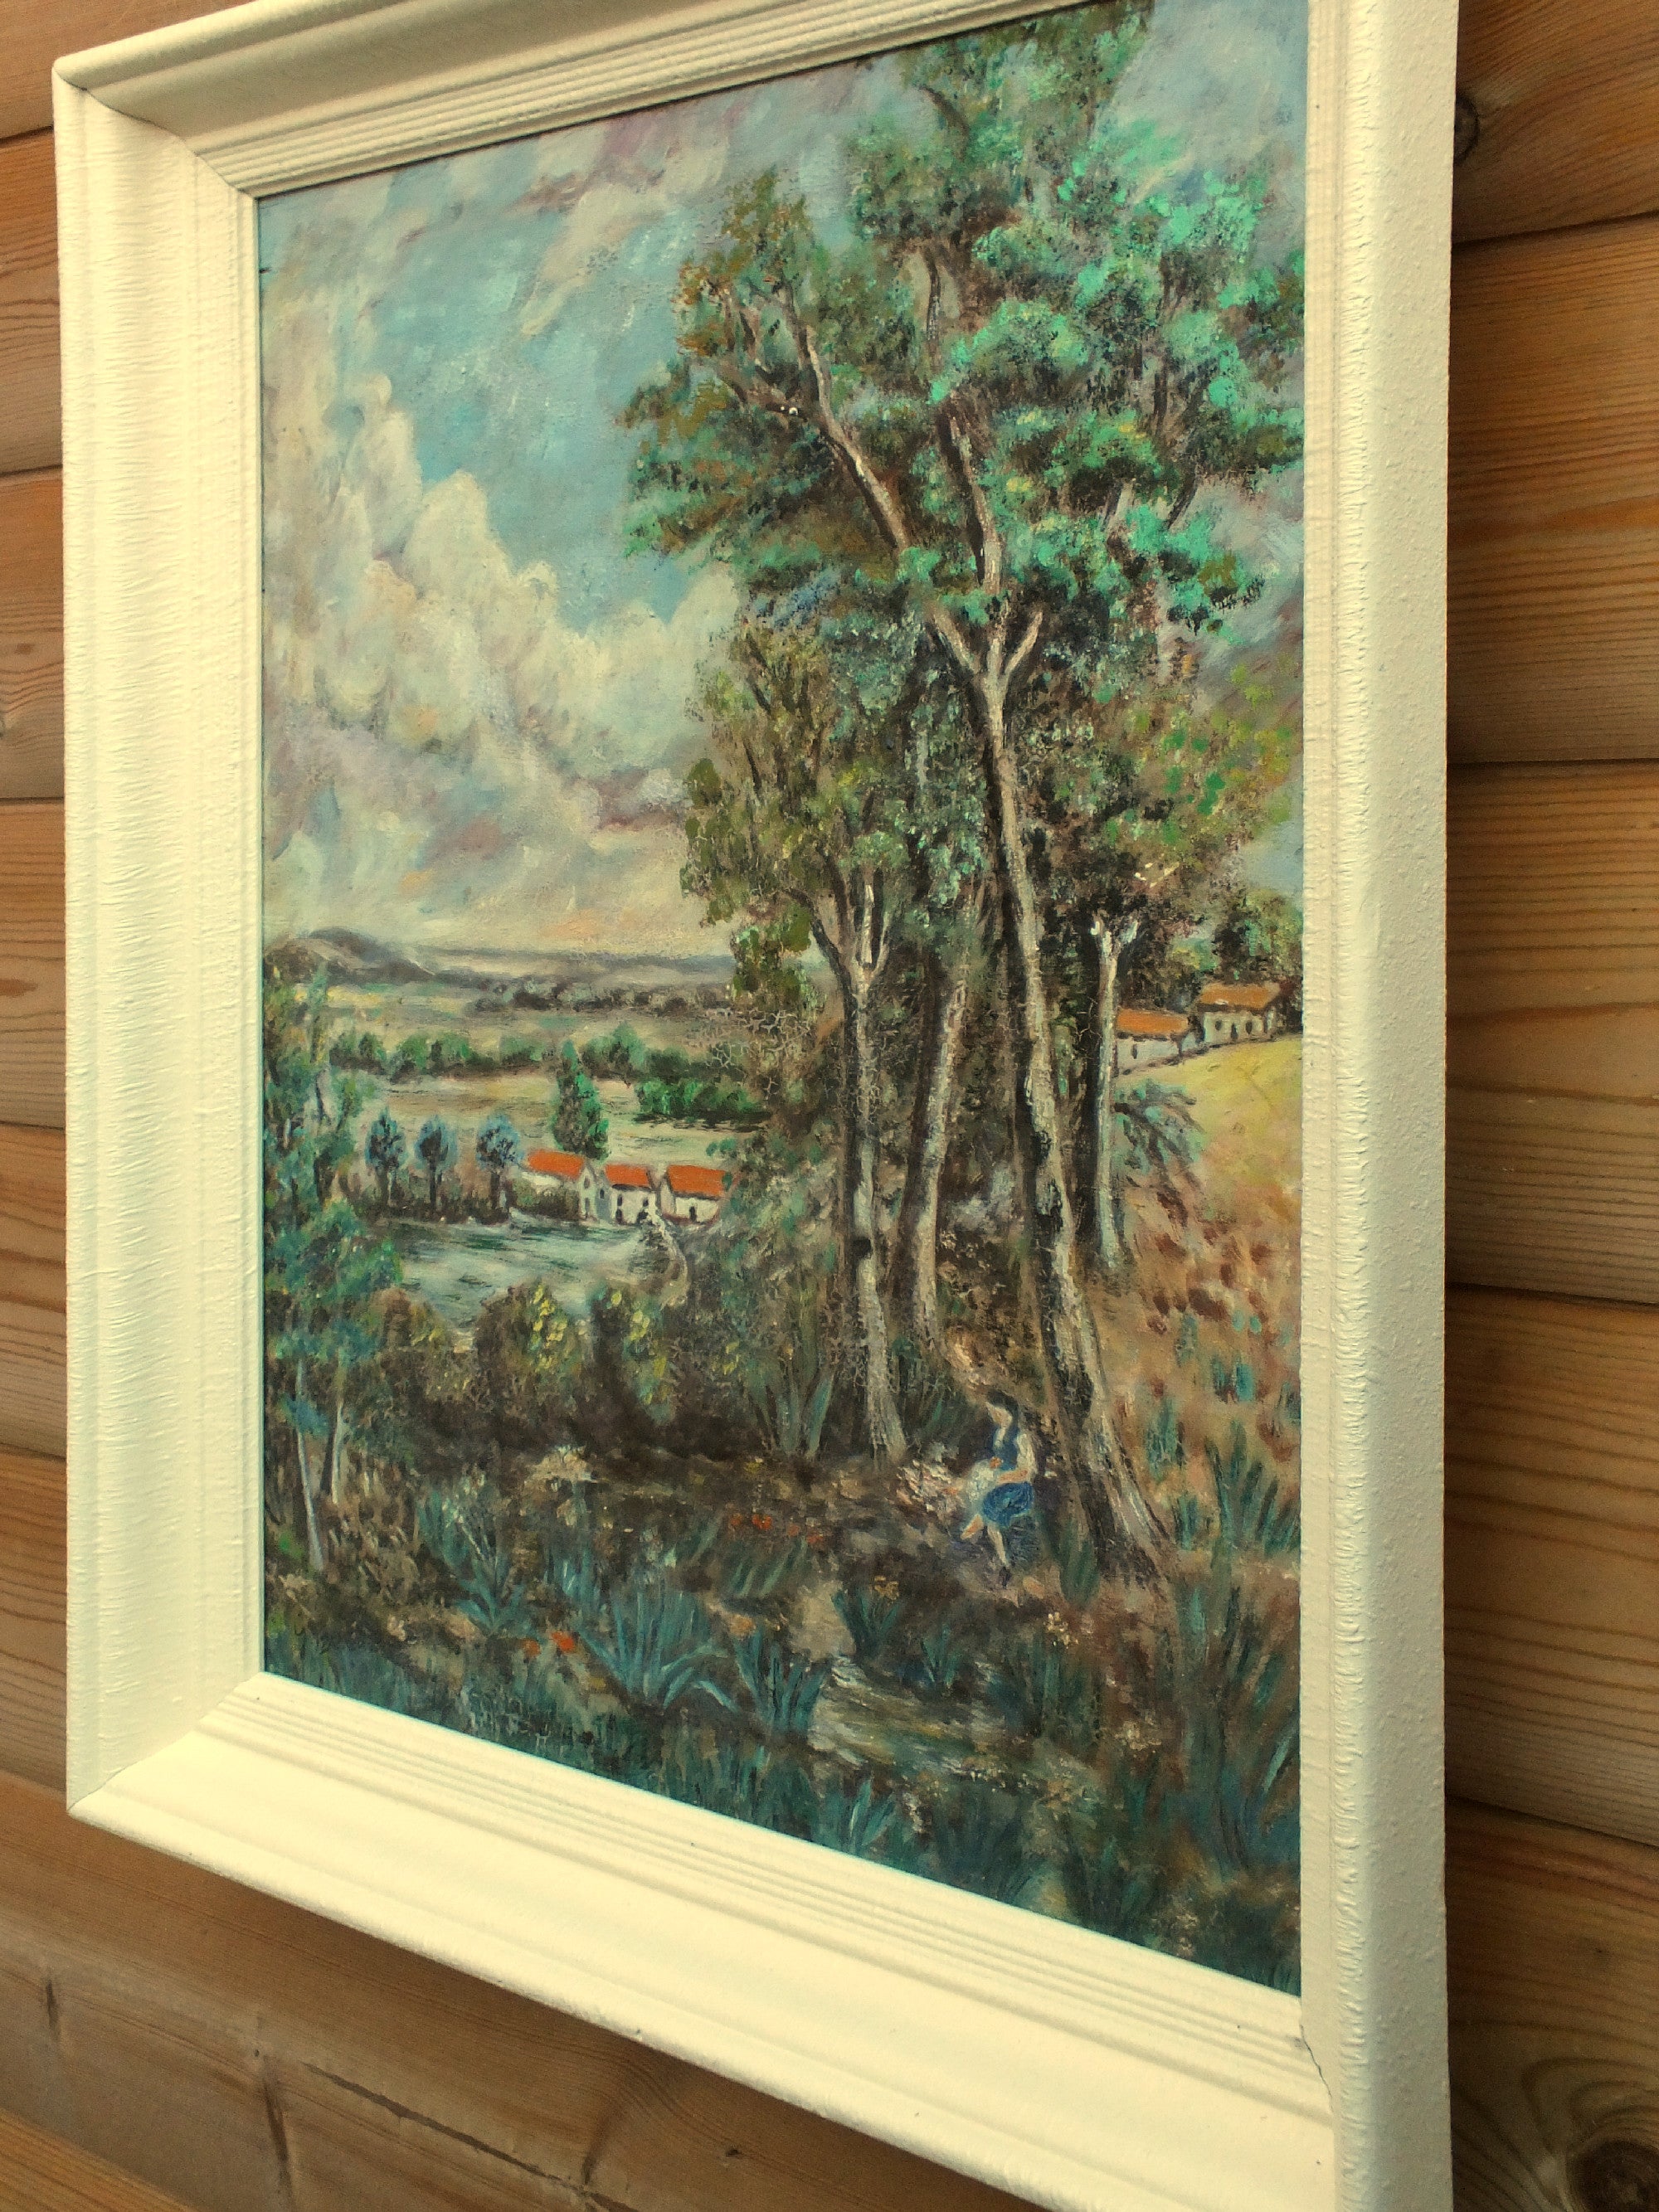 Spanish Landscape Oil Painting Signed Framed Original